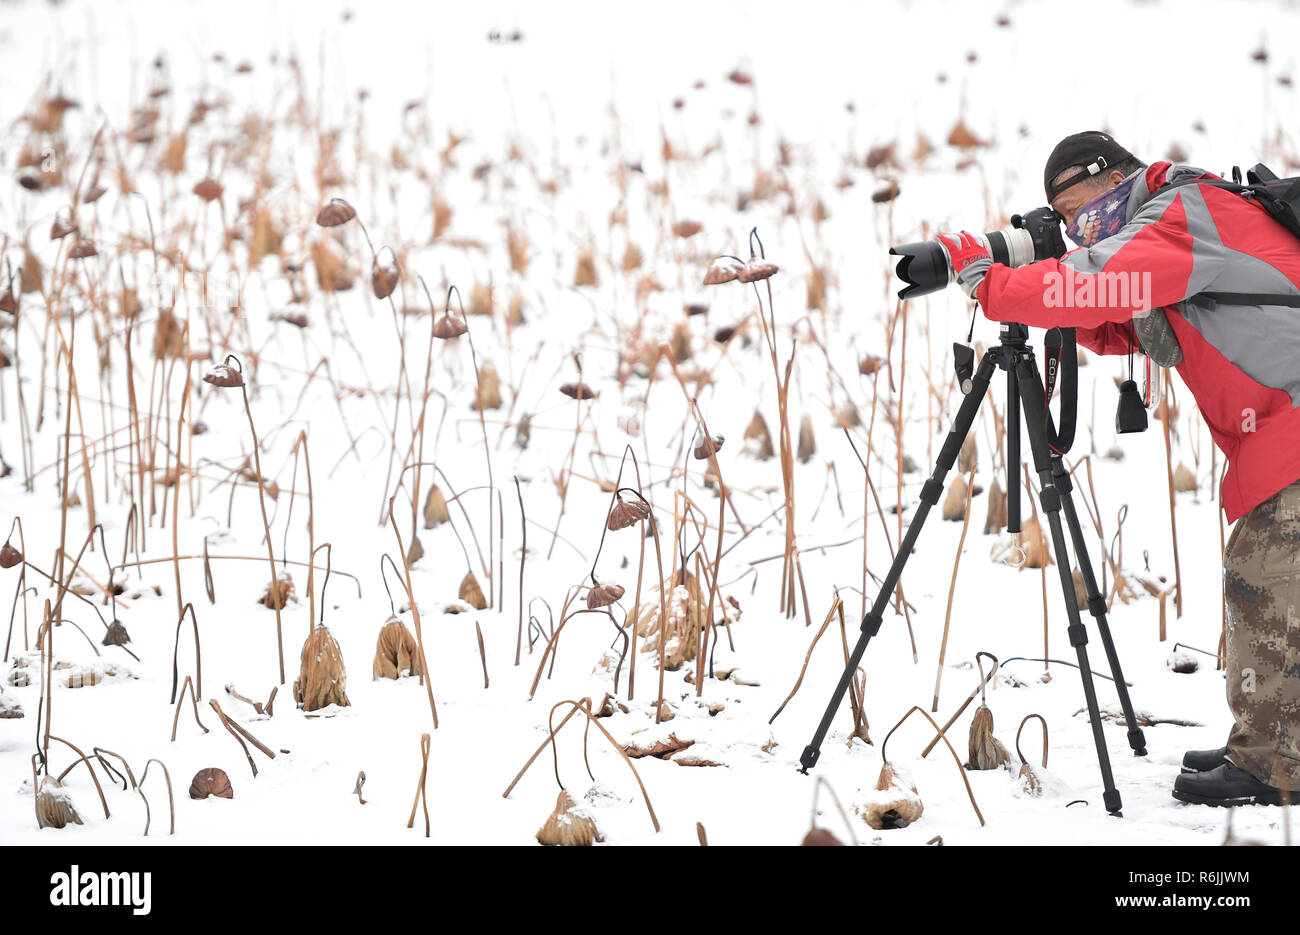 Shenyang, cinese della provincia di Liaoning. 6 dicembre, 2018. Un shutterbug prende le immagini della appassiti lotus dopo la nevicata a Zhao Mausoleo di Shenyang, capitale del nord-est della Cina di Provincia di Liaoning, 6 dicembre 2018. Un fronte freddo portato nevicata a parti della provincia di Liaoning giovedì mattina. Credito: Yao Jianfeng/Xinhua/Alamy Live News Foto Stock